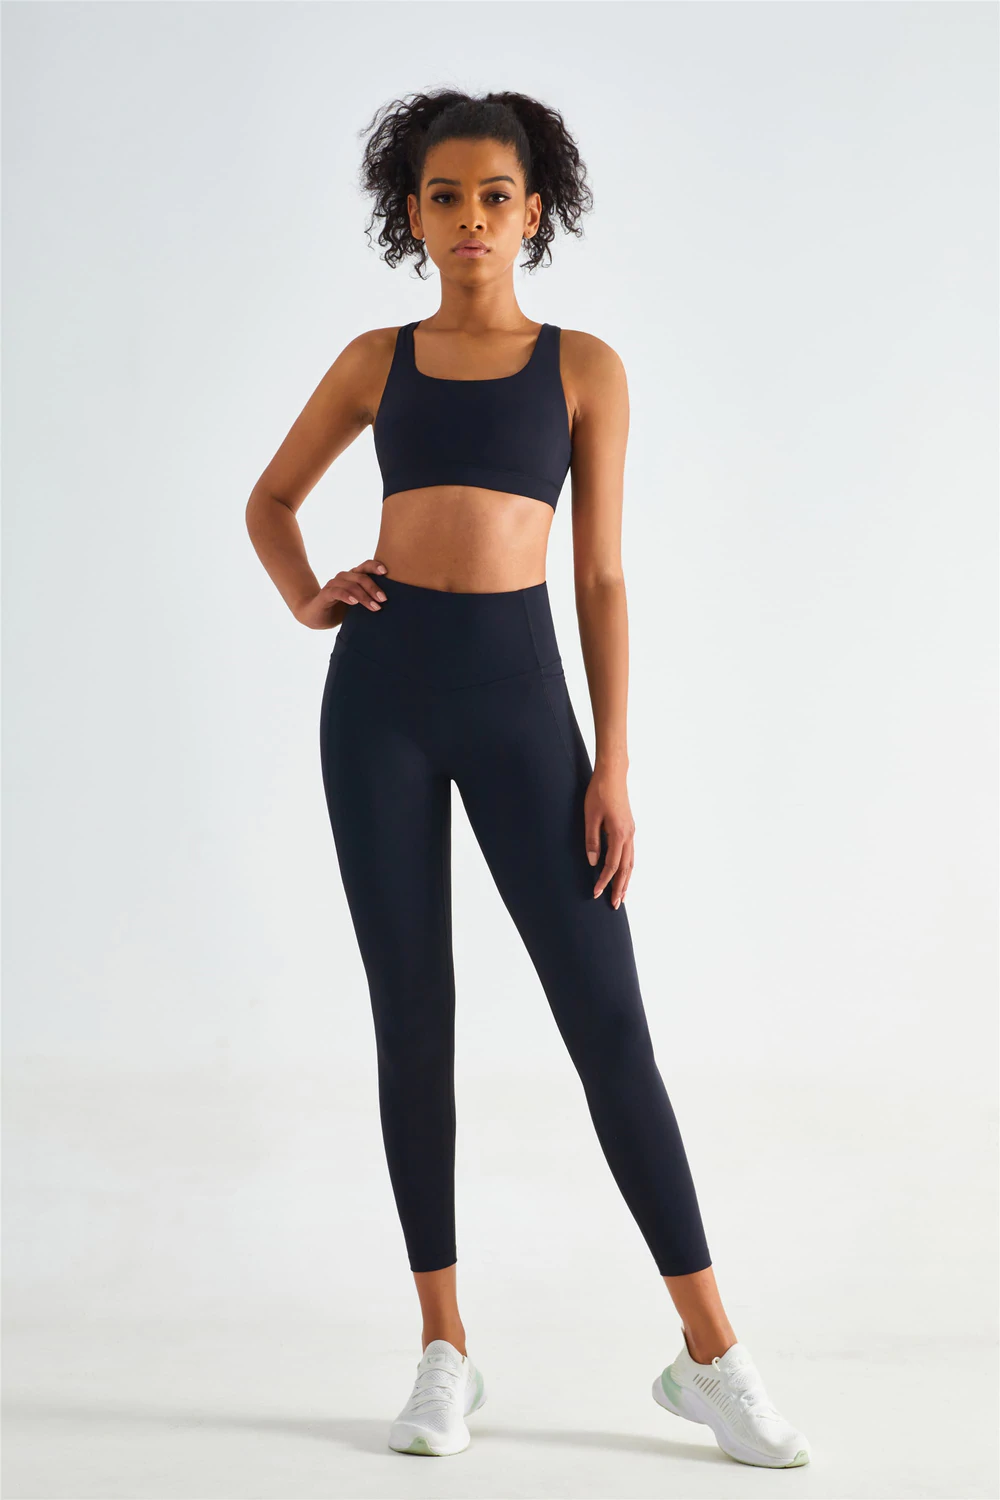 Leggings For Girls, black leggings designed for running